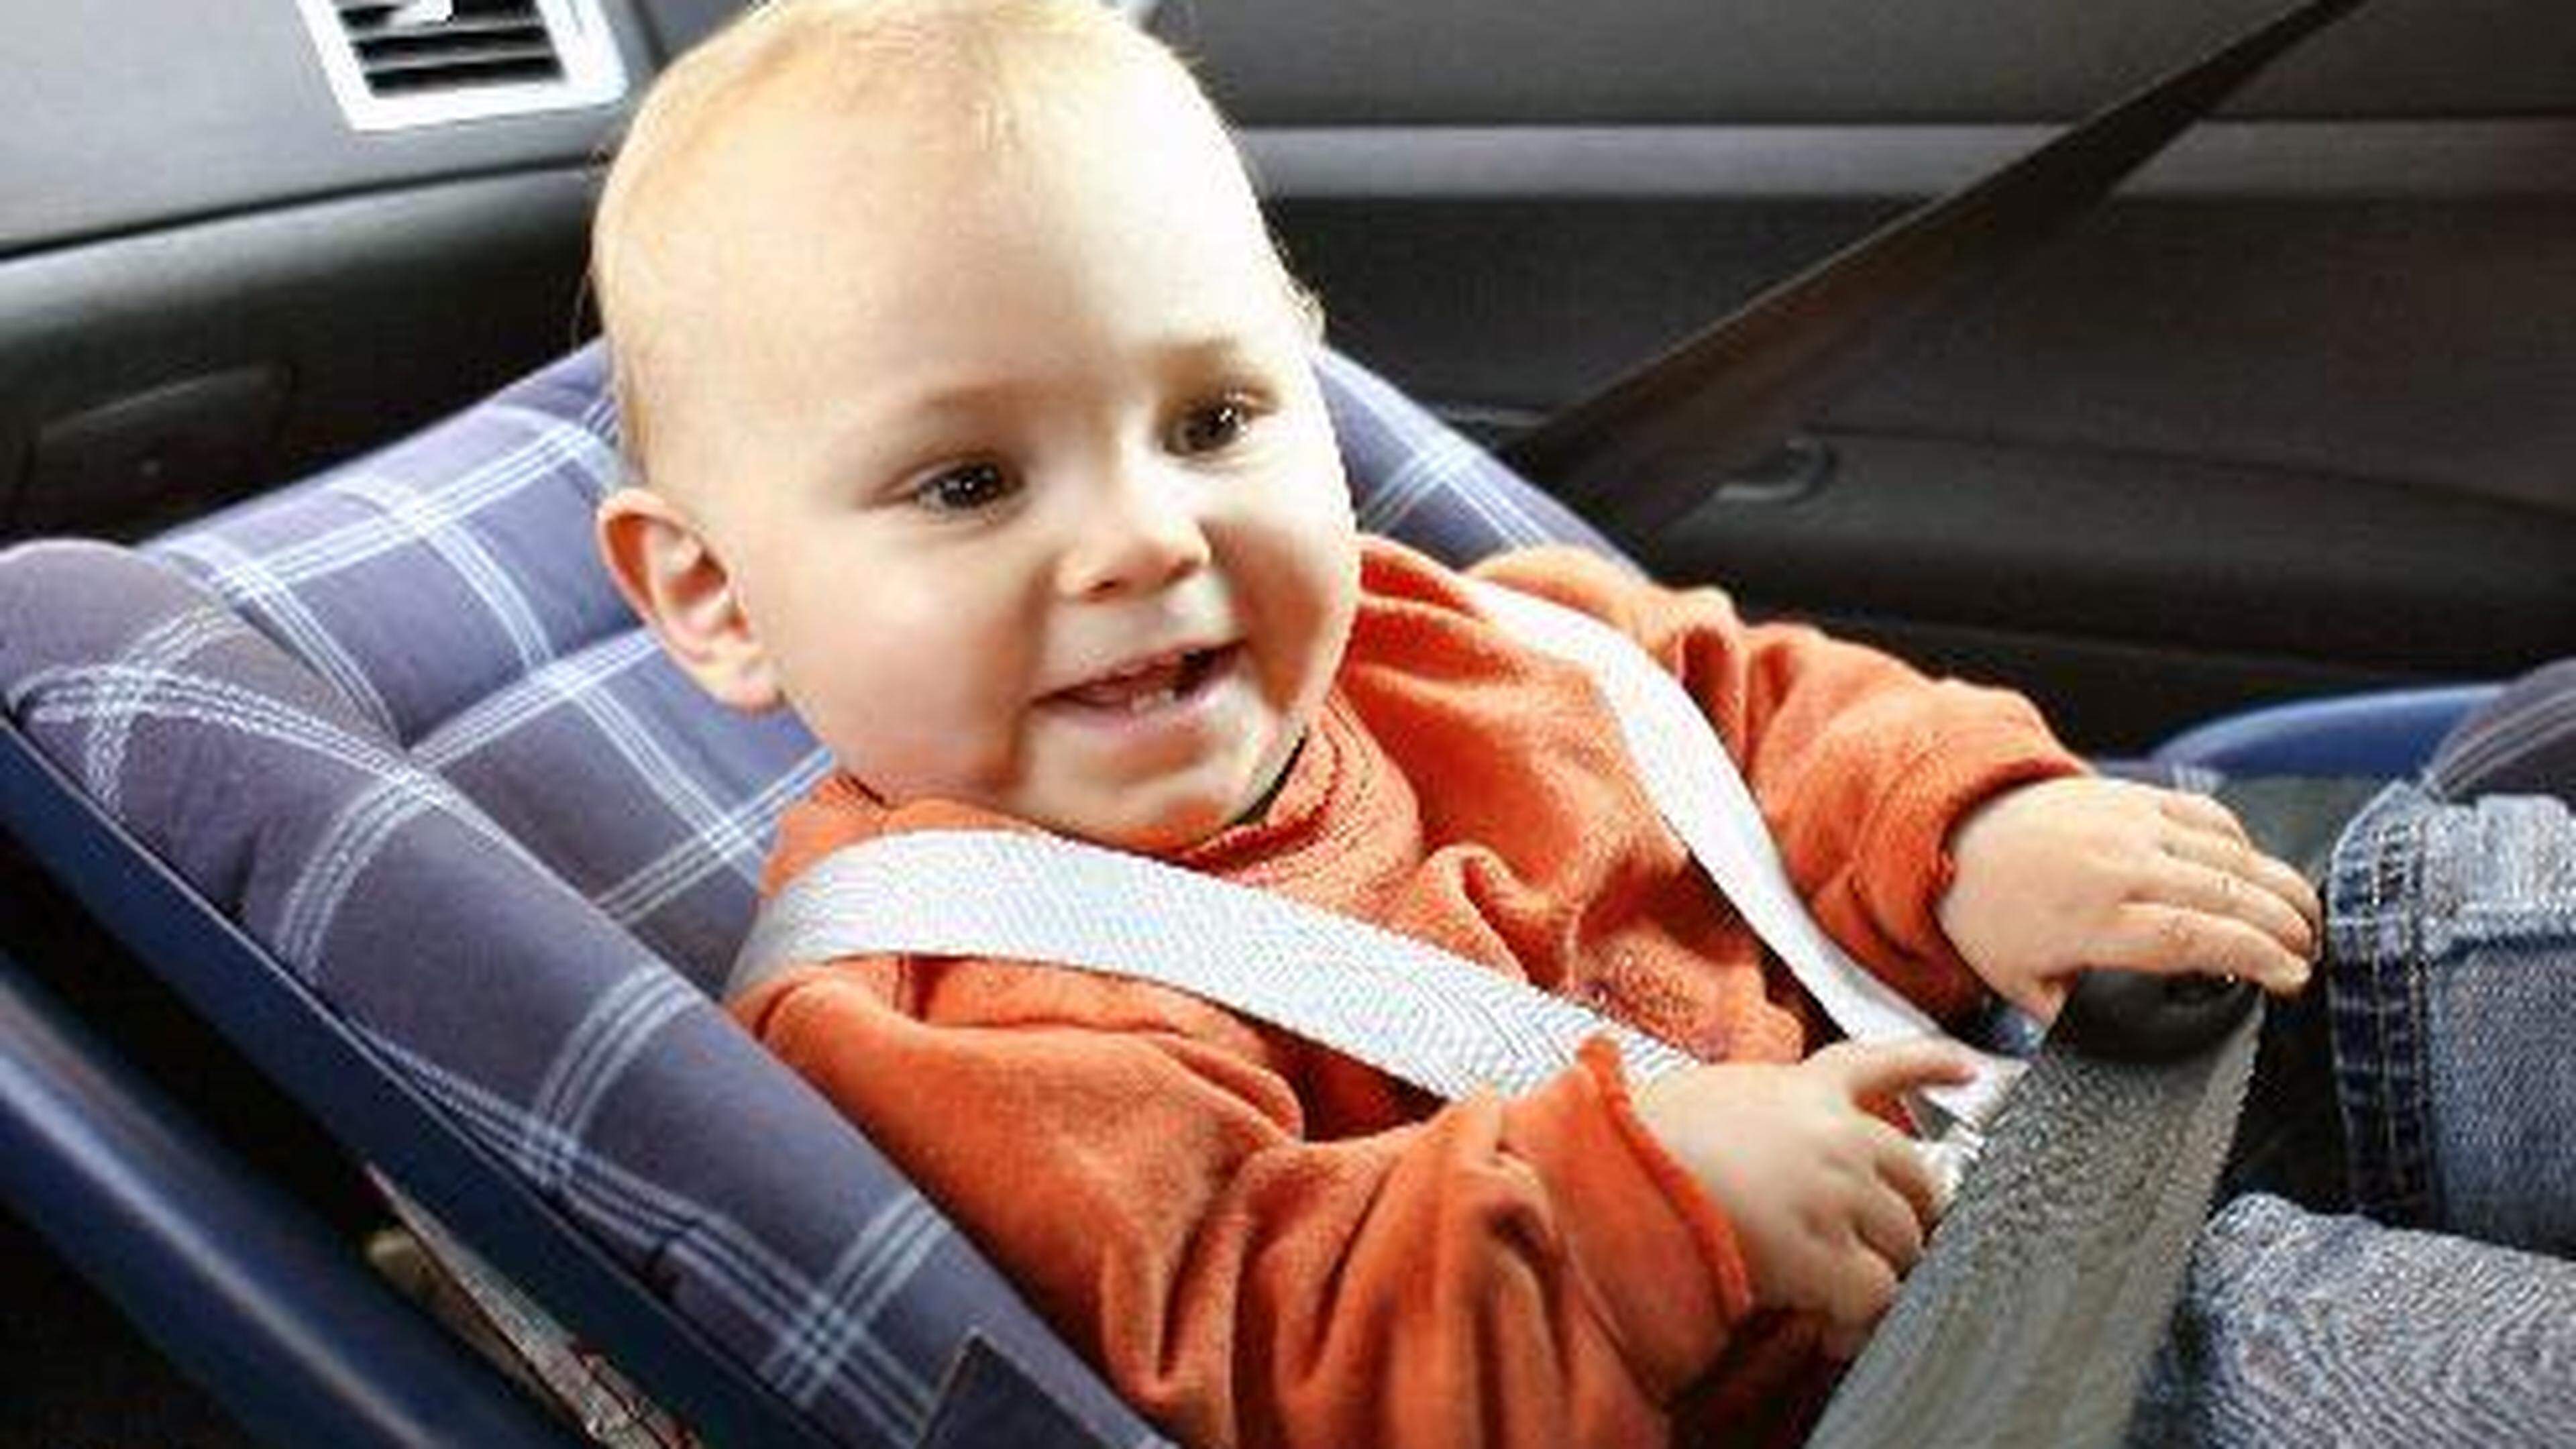 Die richtige Kindersicherung im Auto - gesetzliche Bestimmungen